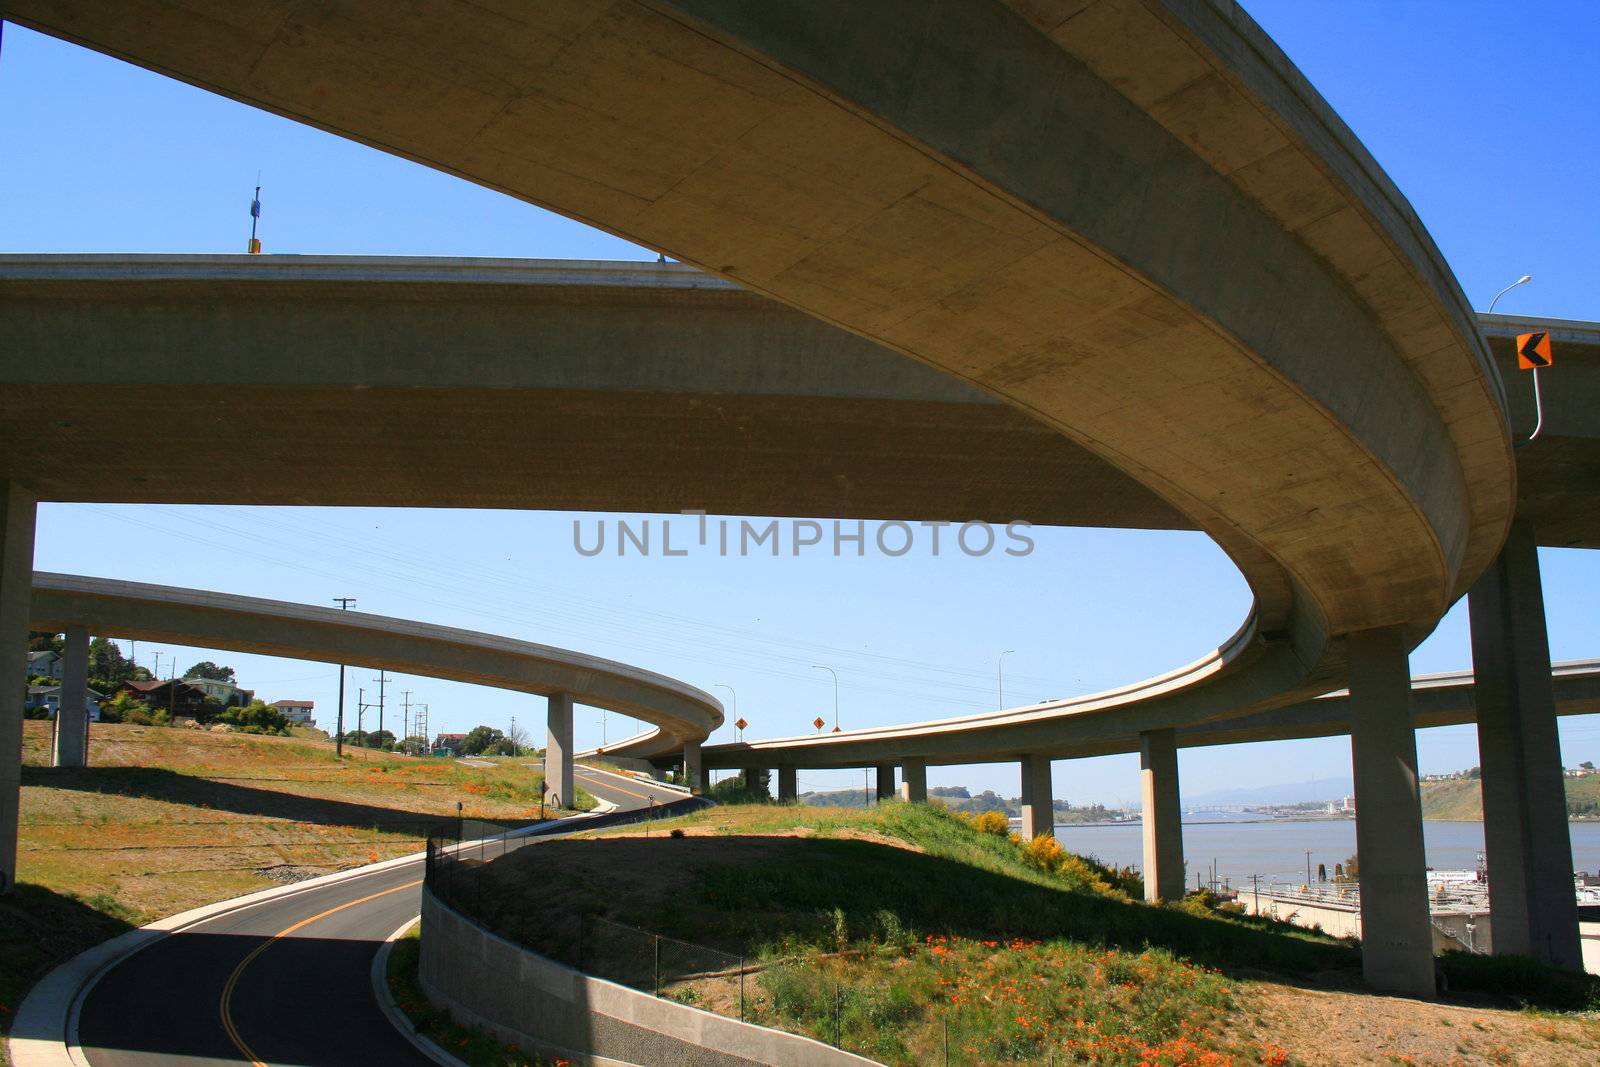 Freeway Ramps by MichaelFelix